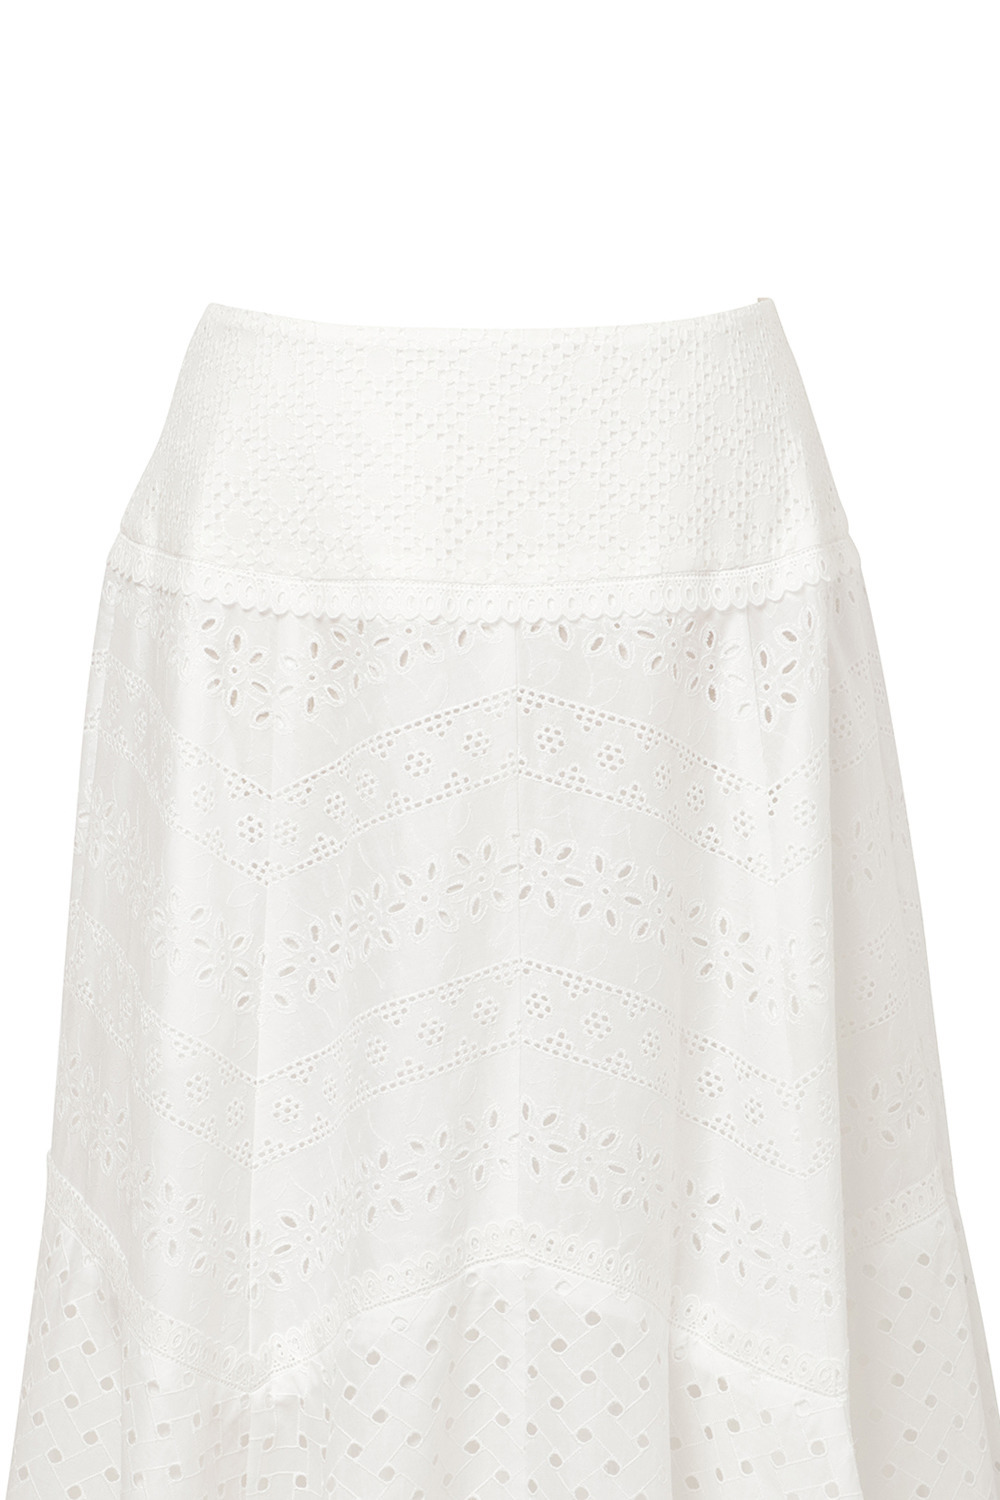 Cotton Lace Patchwork スカート 詳細画像 ホワイト 3